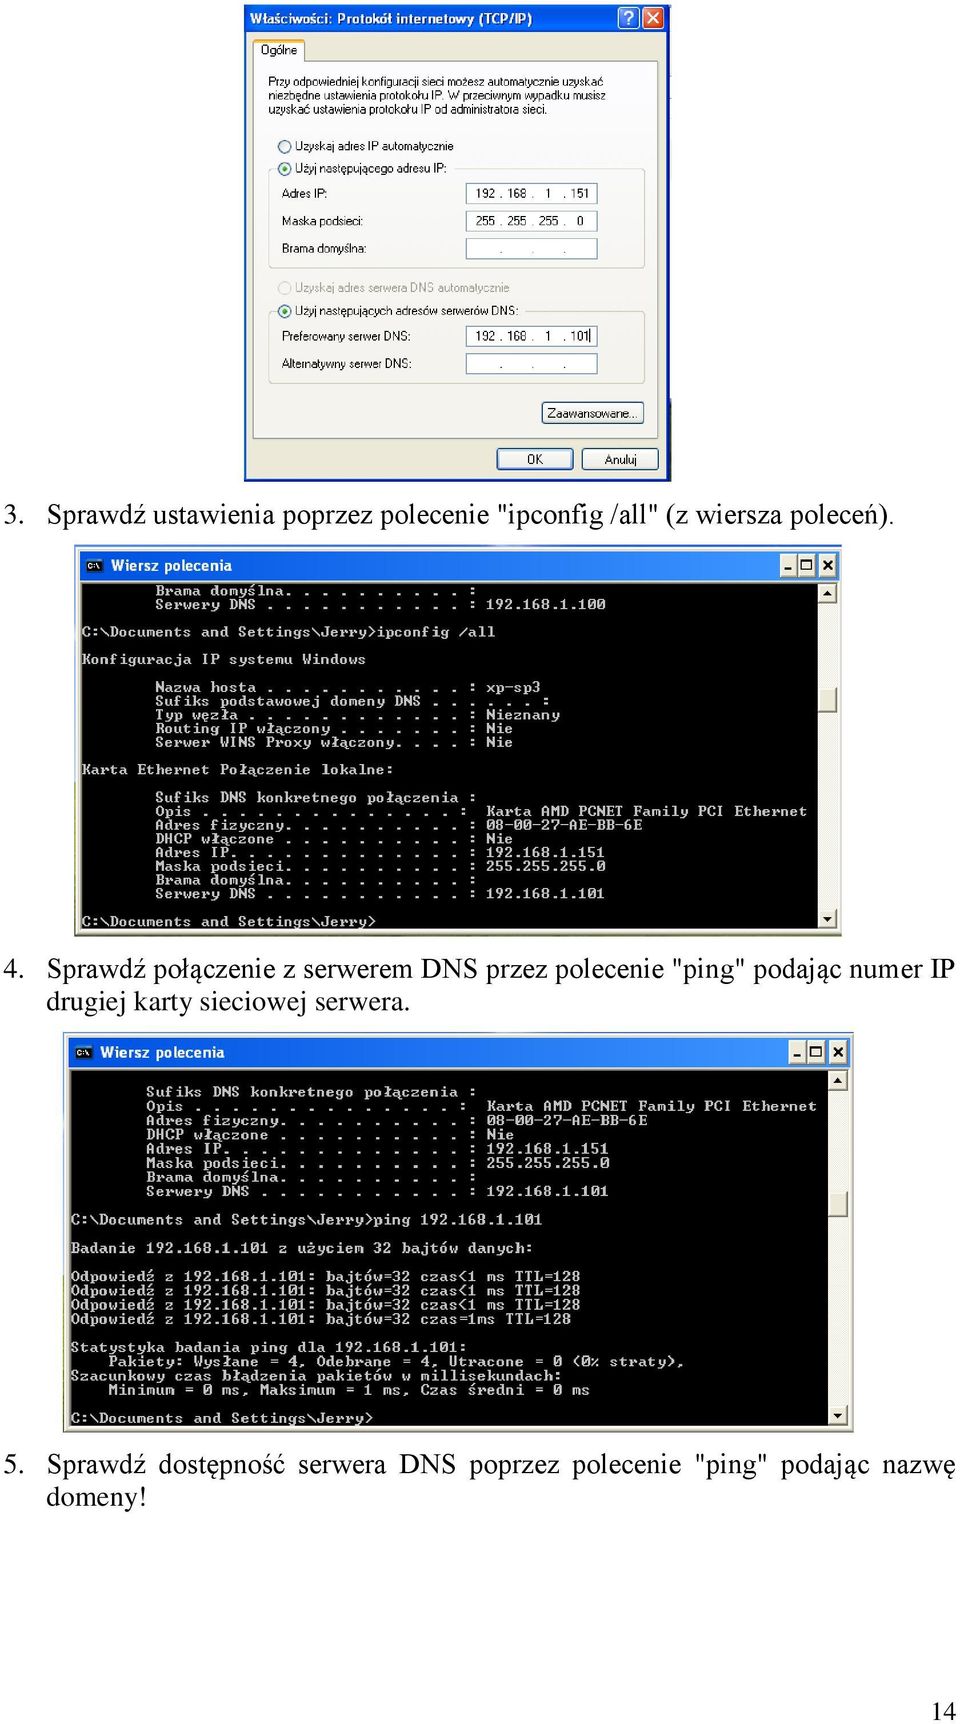 Sprawdź połączenie z serwerem DNS przez polecenie "ping" podając